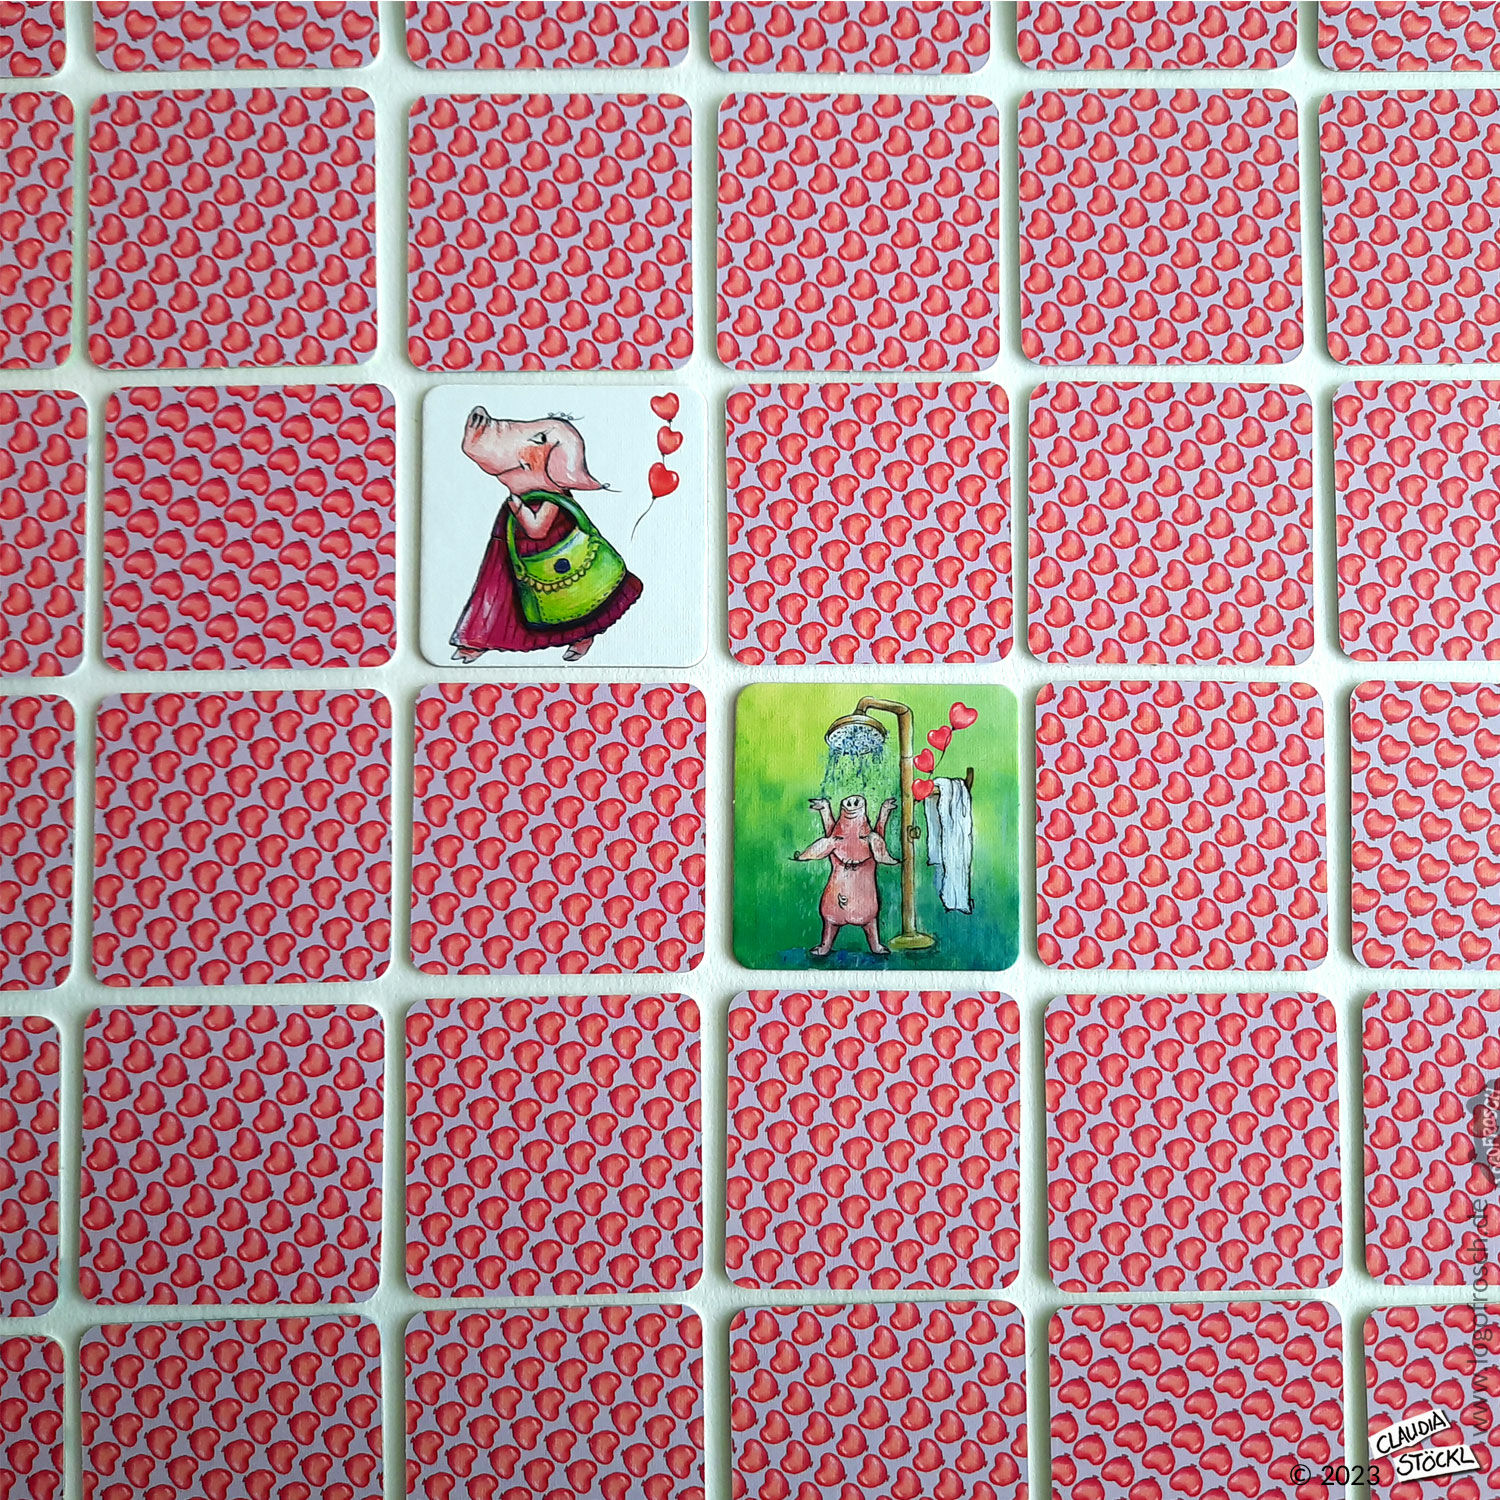 Karten-/Brettspiel "Schlawiner & Charlott" (für Kinder ab 3 Jahren) von Logofrosch